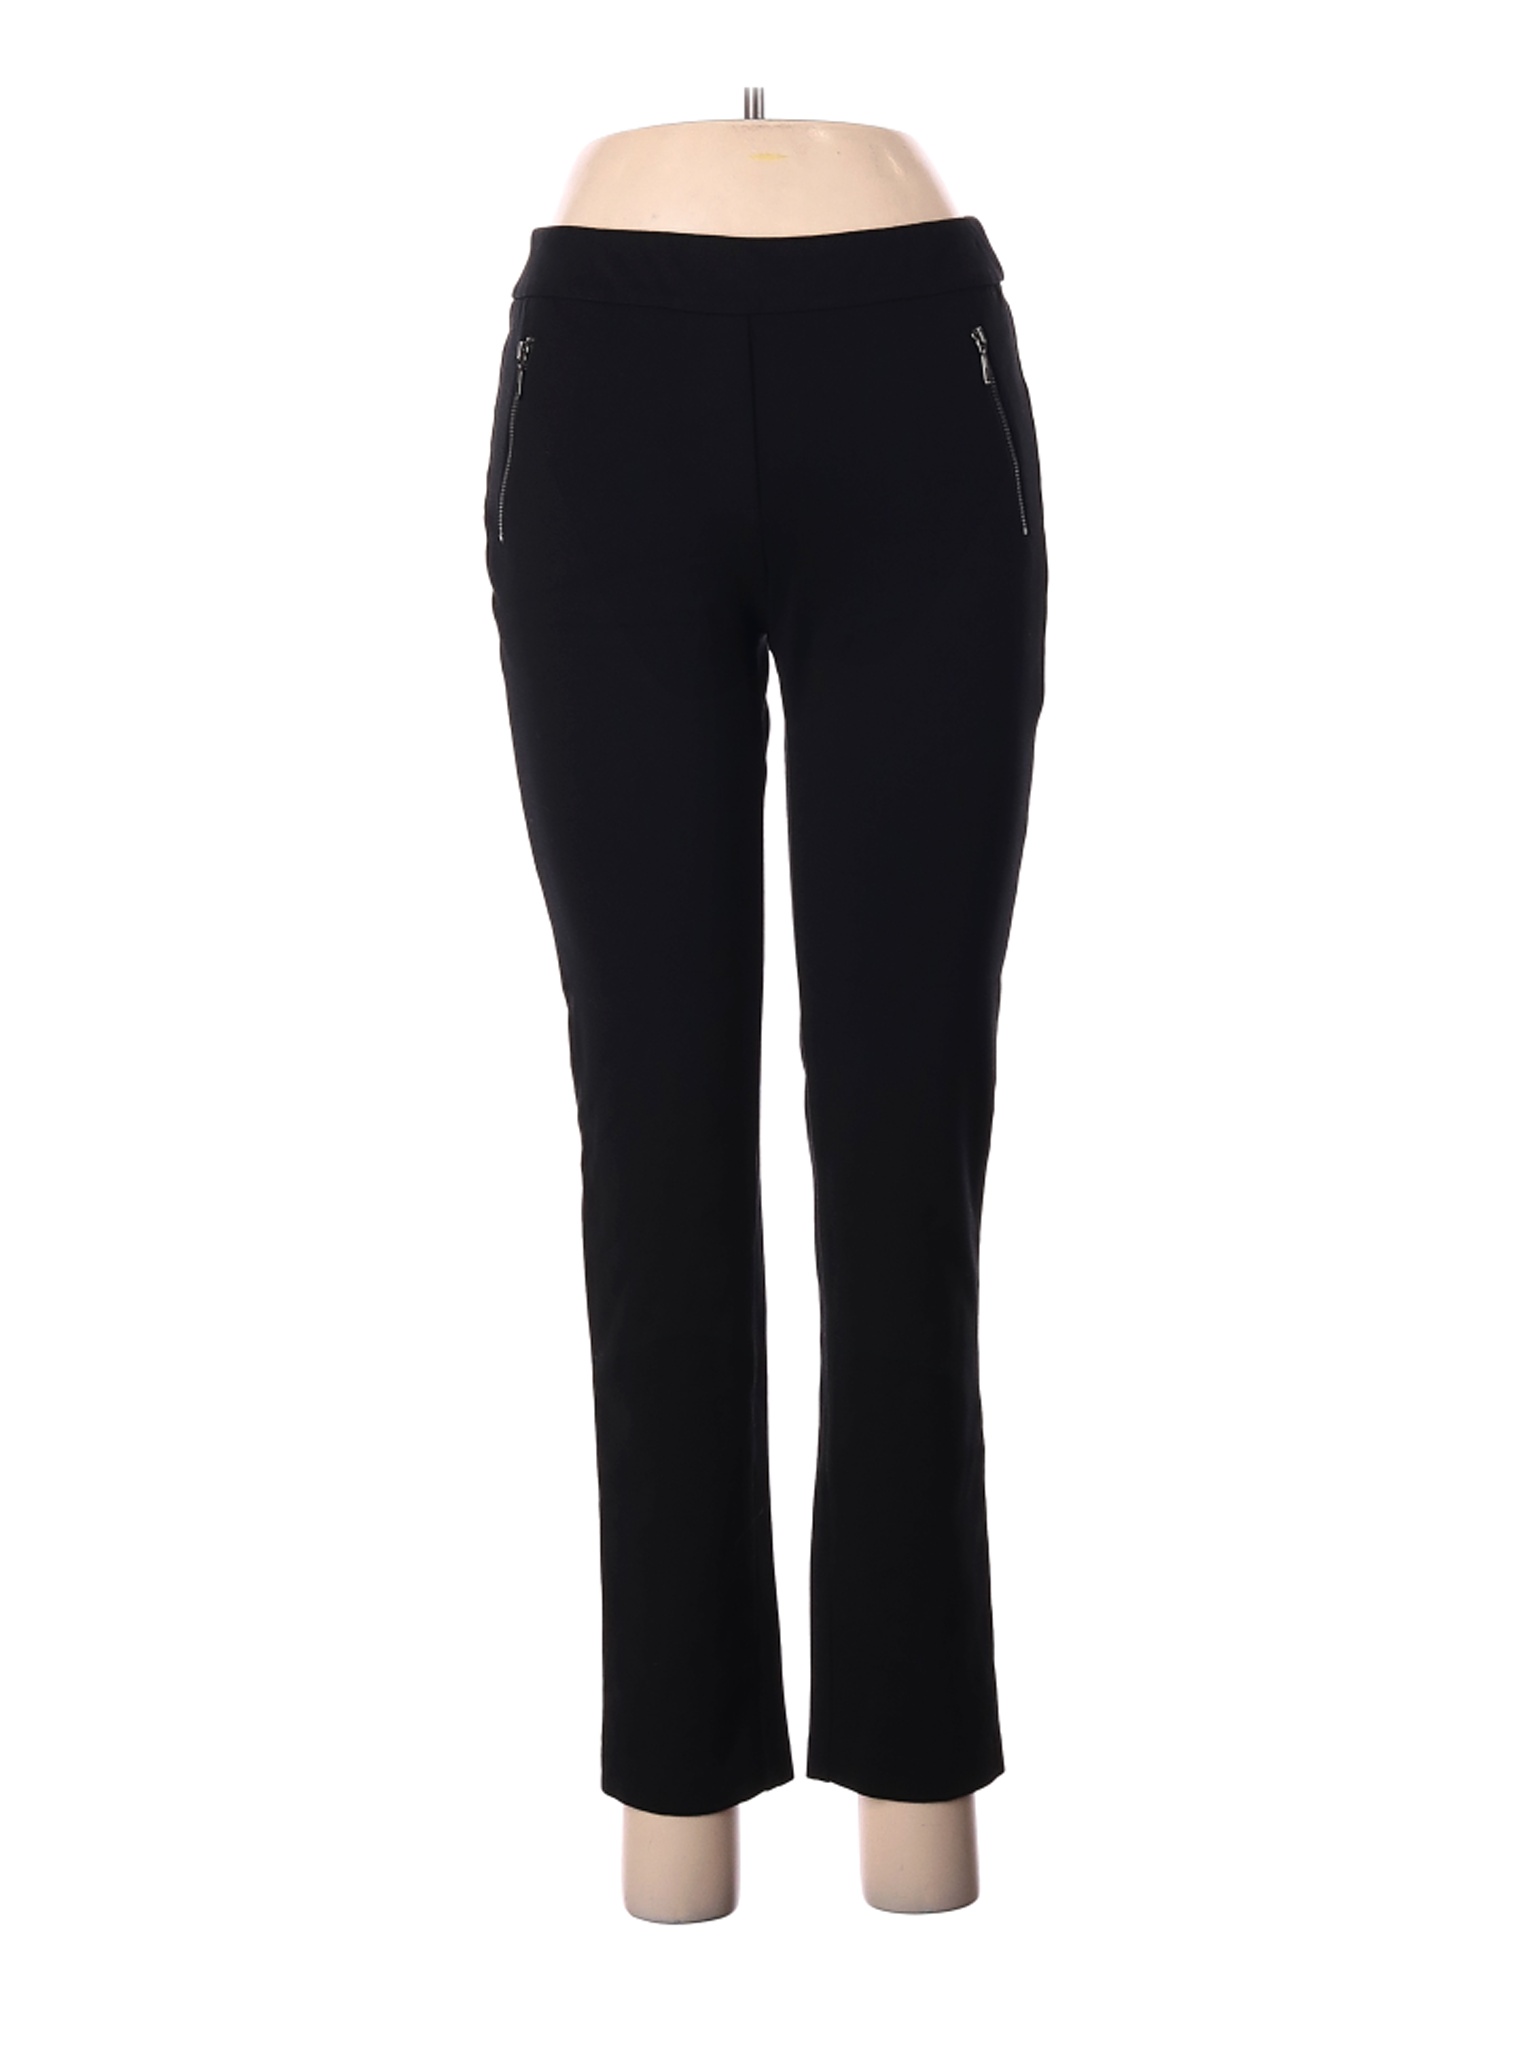 J. McLaughlin Women Black Dress Pants 2 | eBay